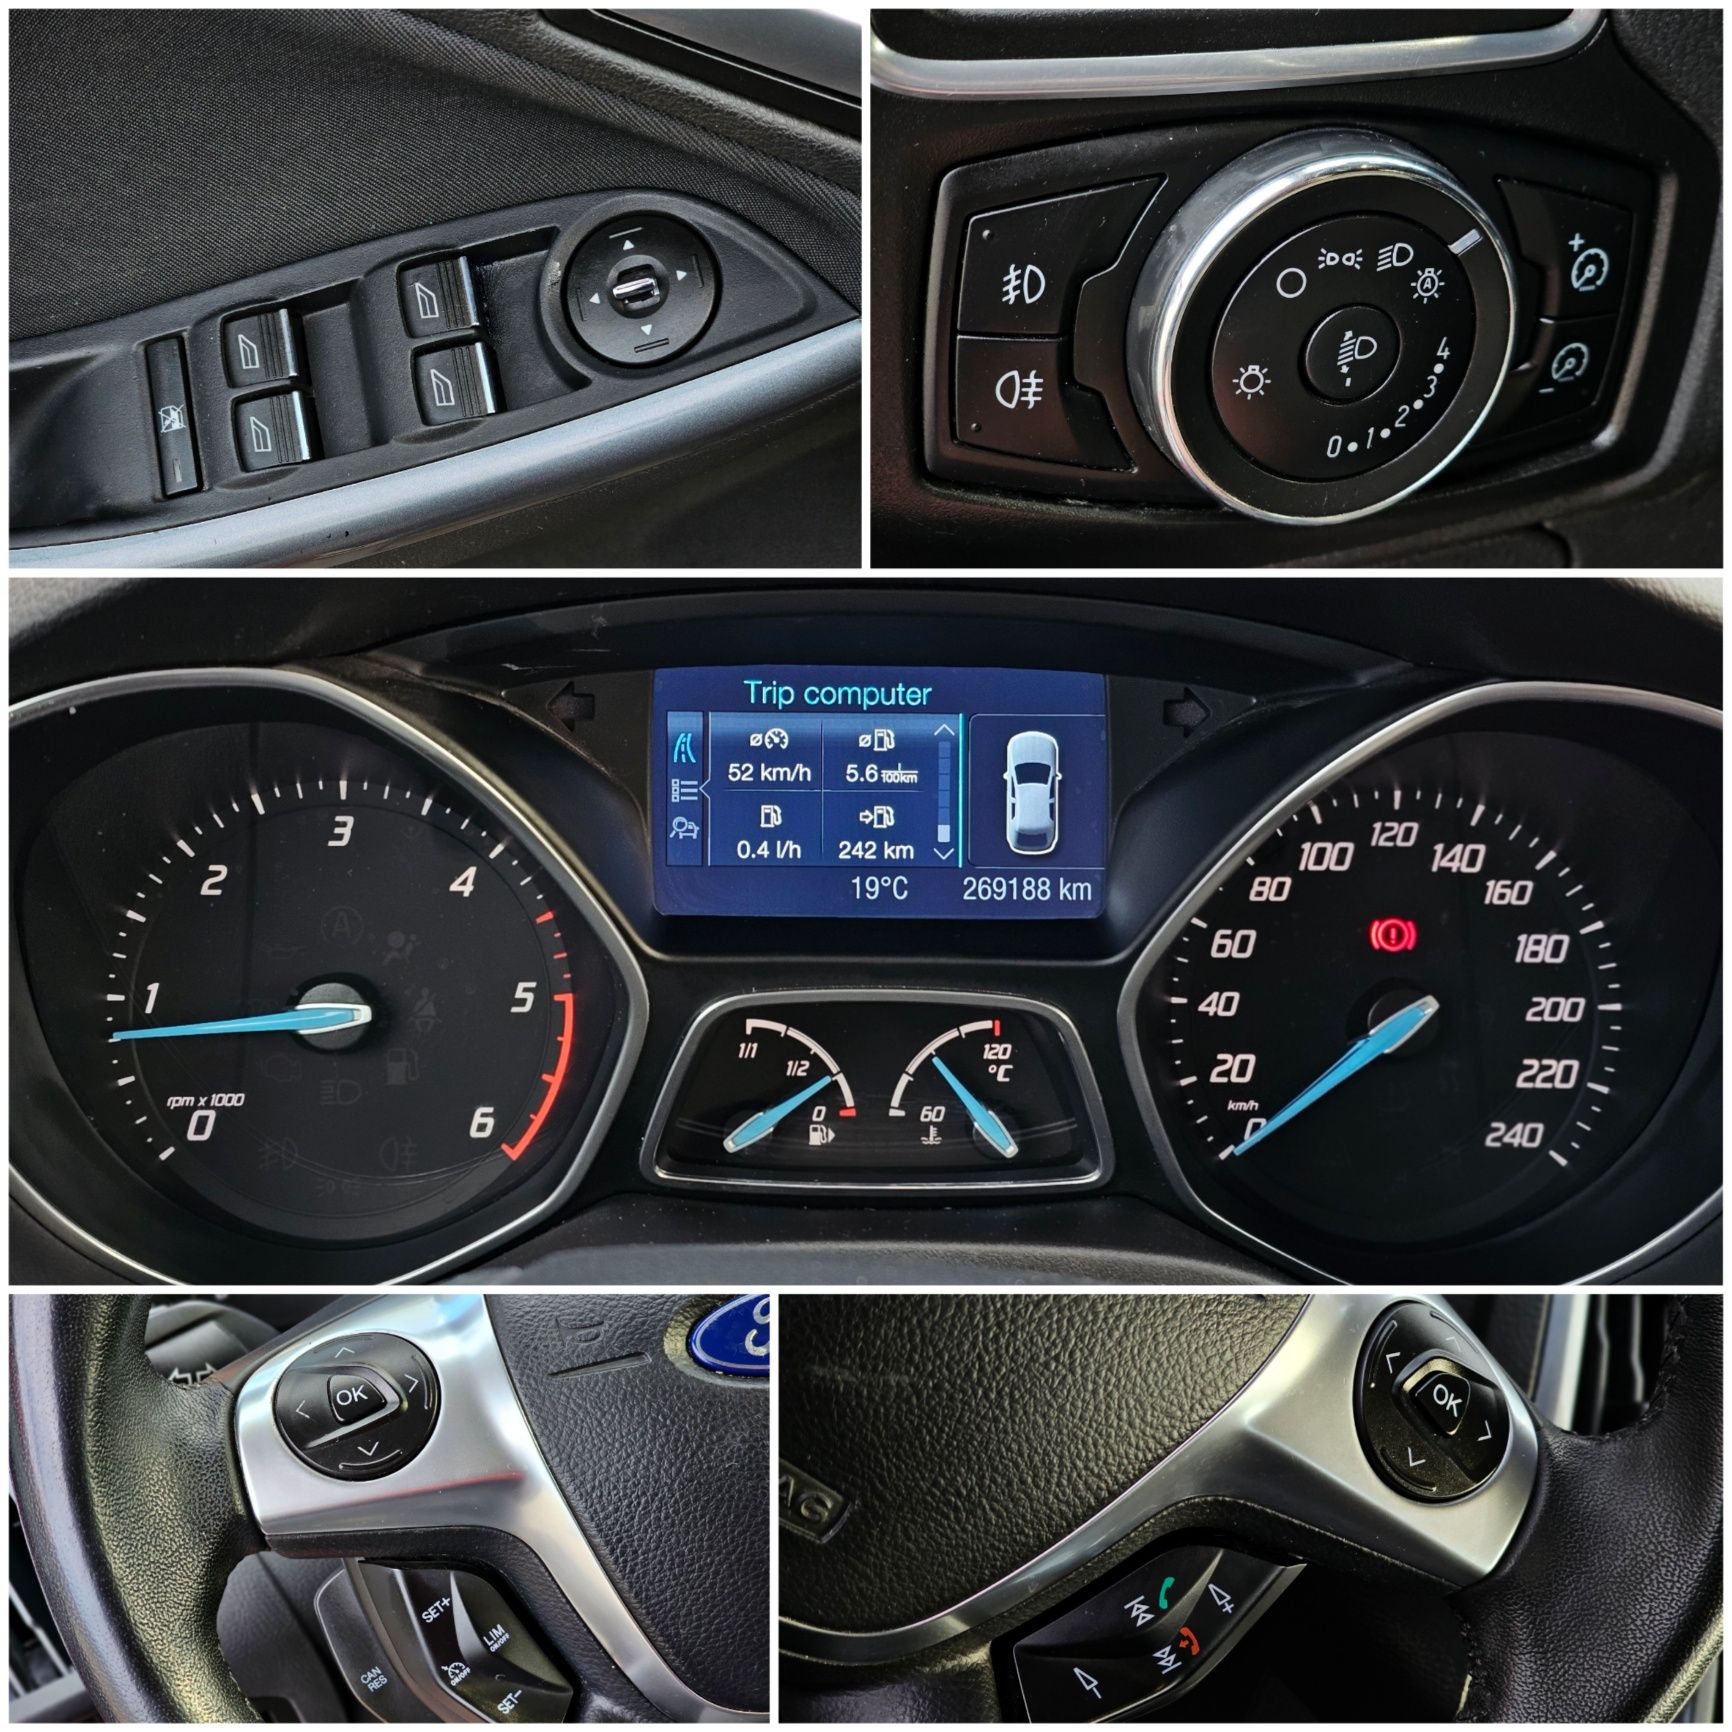 ‼️Posibilitate RATE - Ford Focus 3 Titanium / Euro 5 / Navi‼️